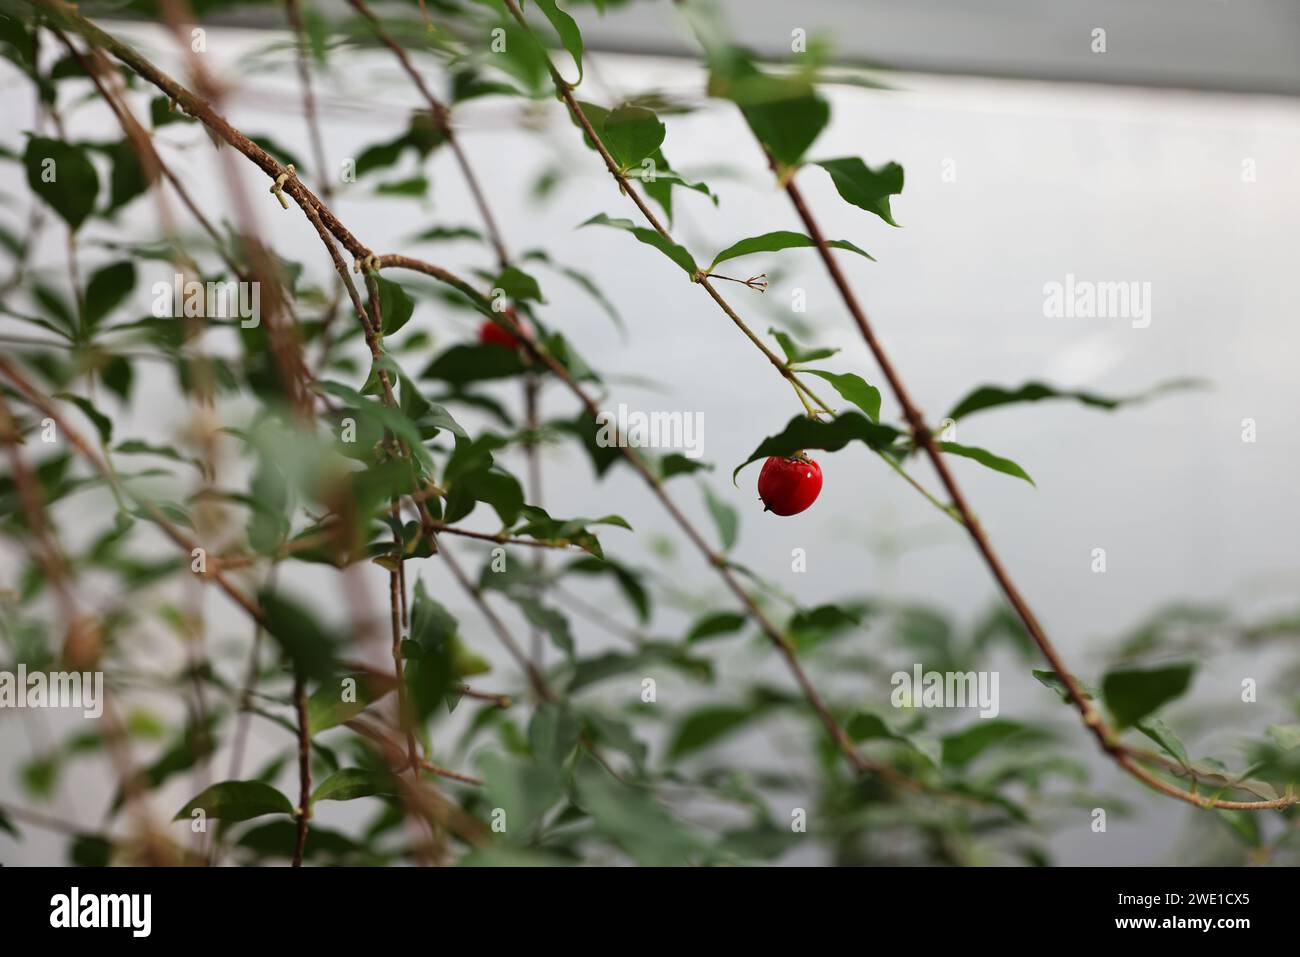 Beautiful Malpighia glabra plant growing in greenhouse, closeup Stock Photo